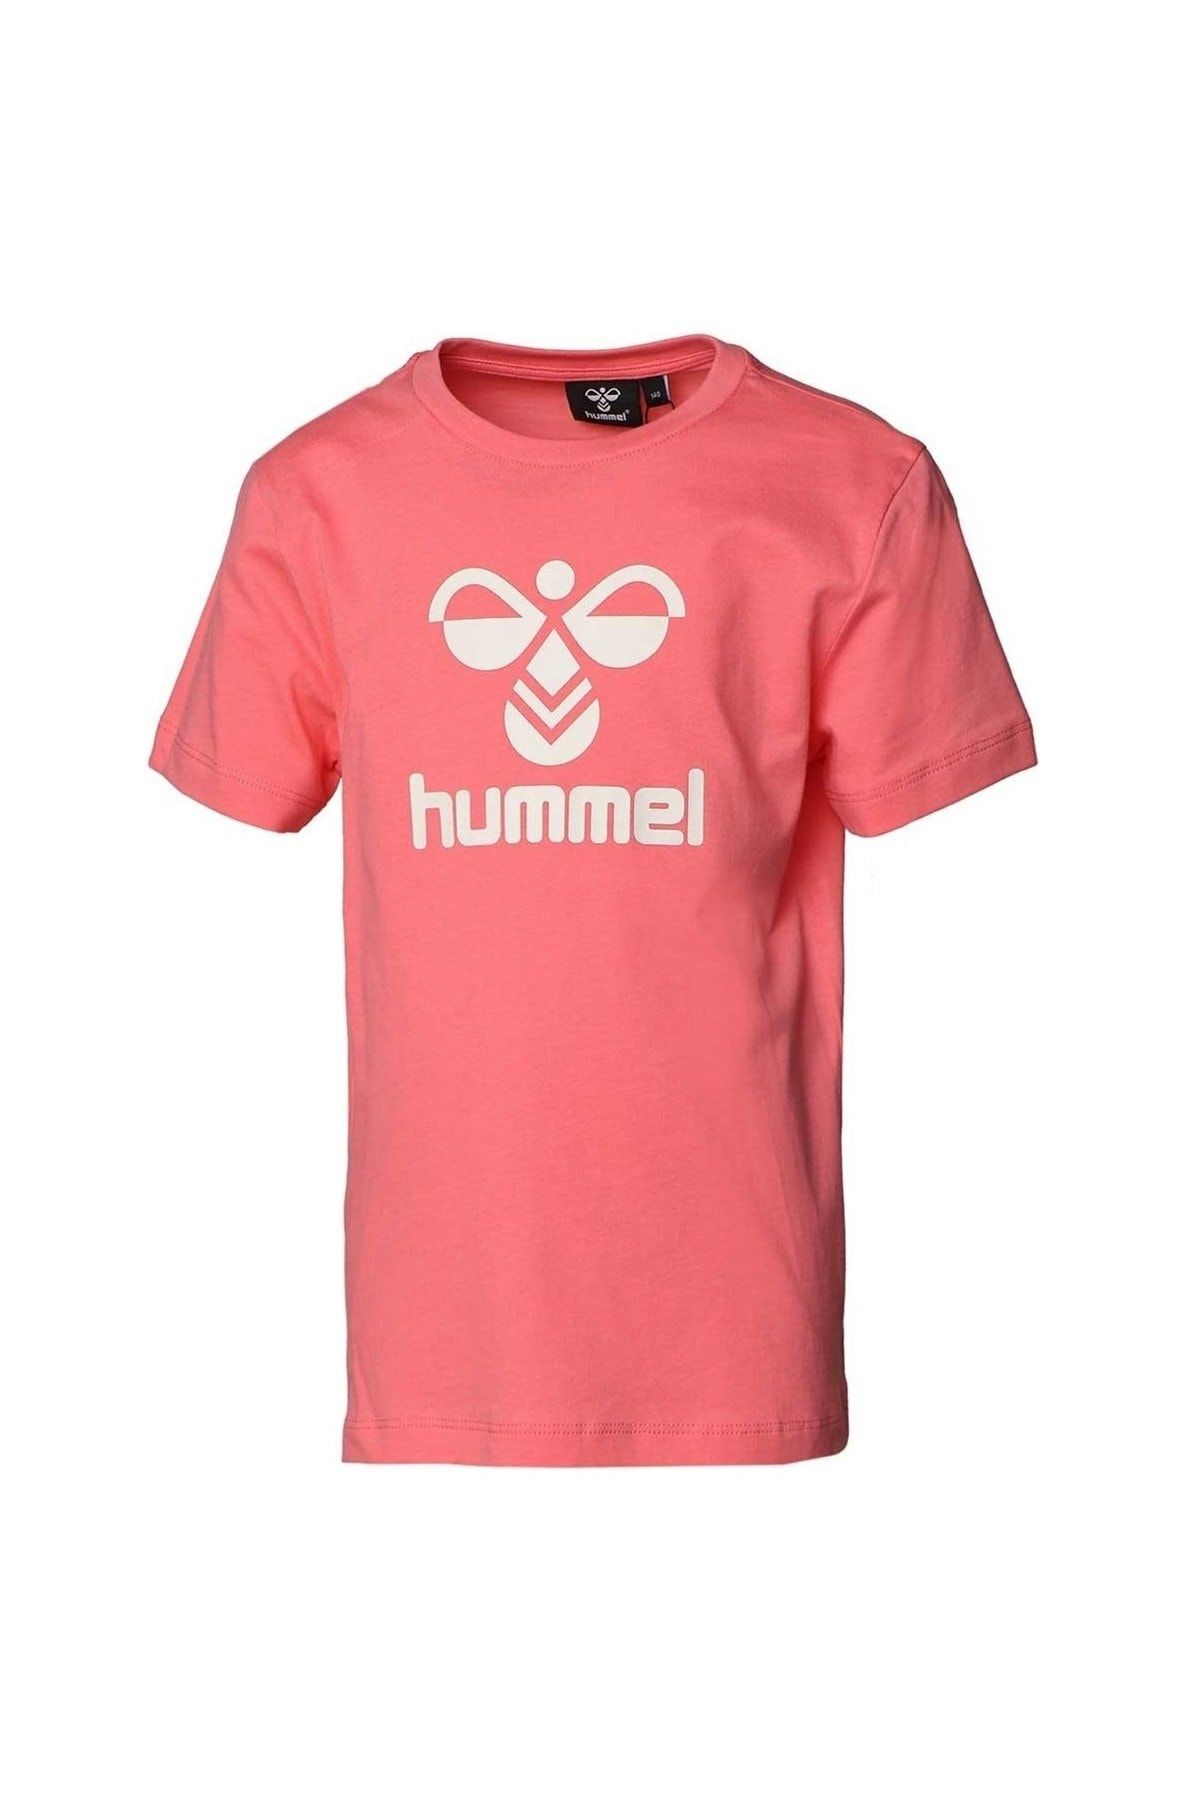 hummel Kız Çocuk Auren Pembe T-shirt 911653-2224